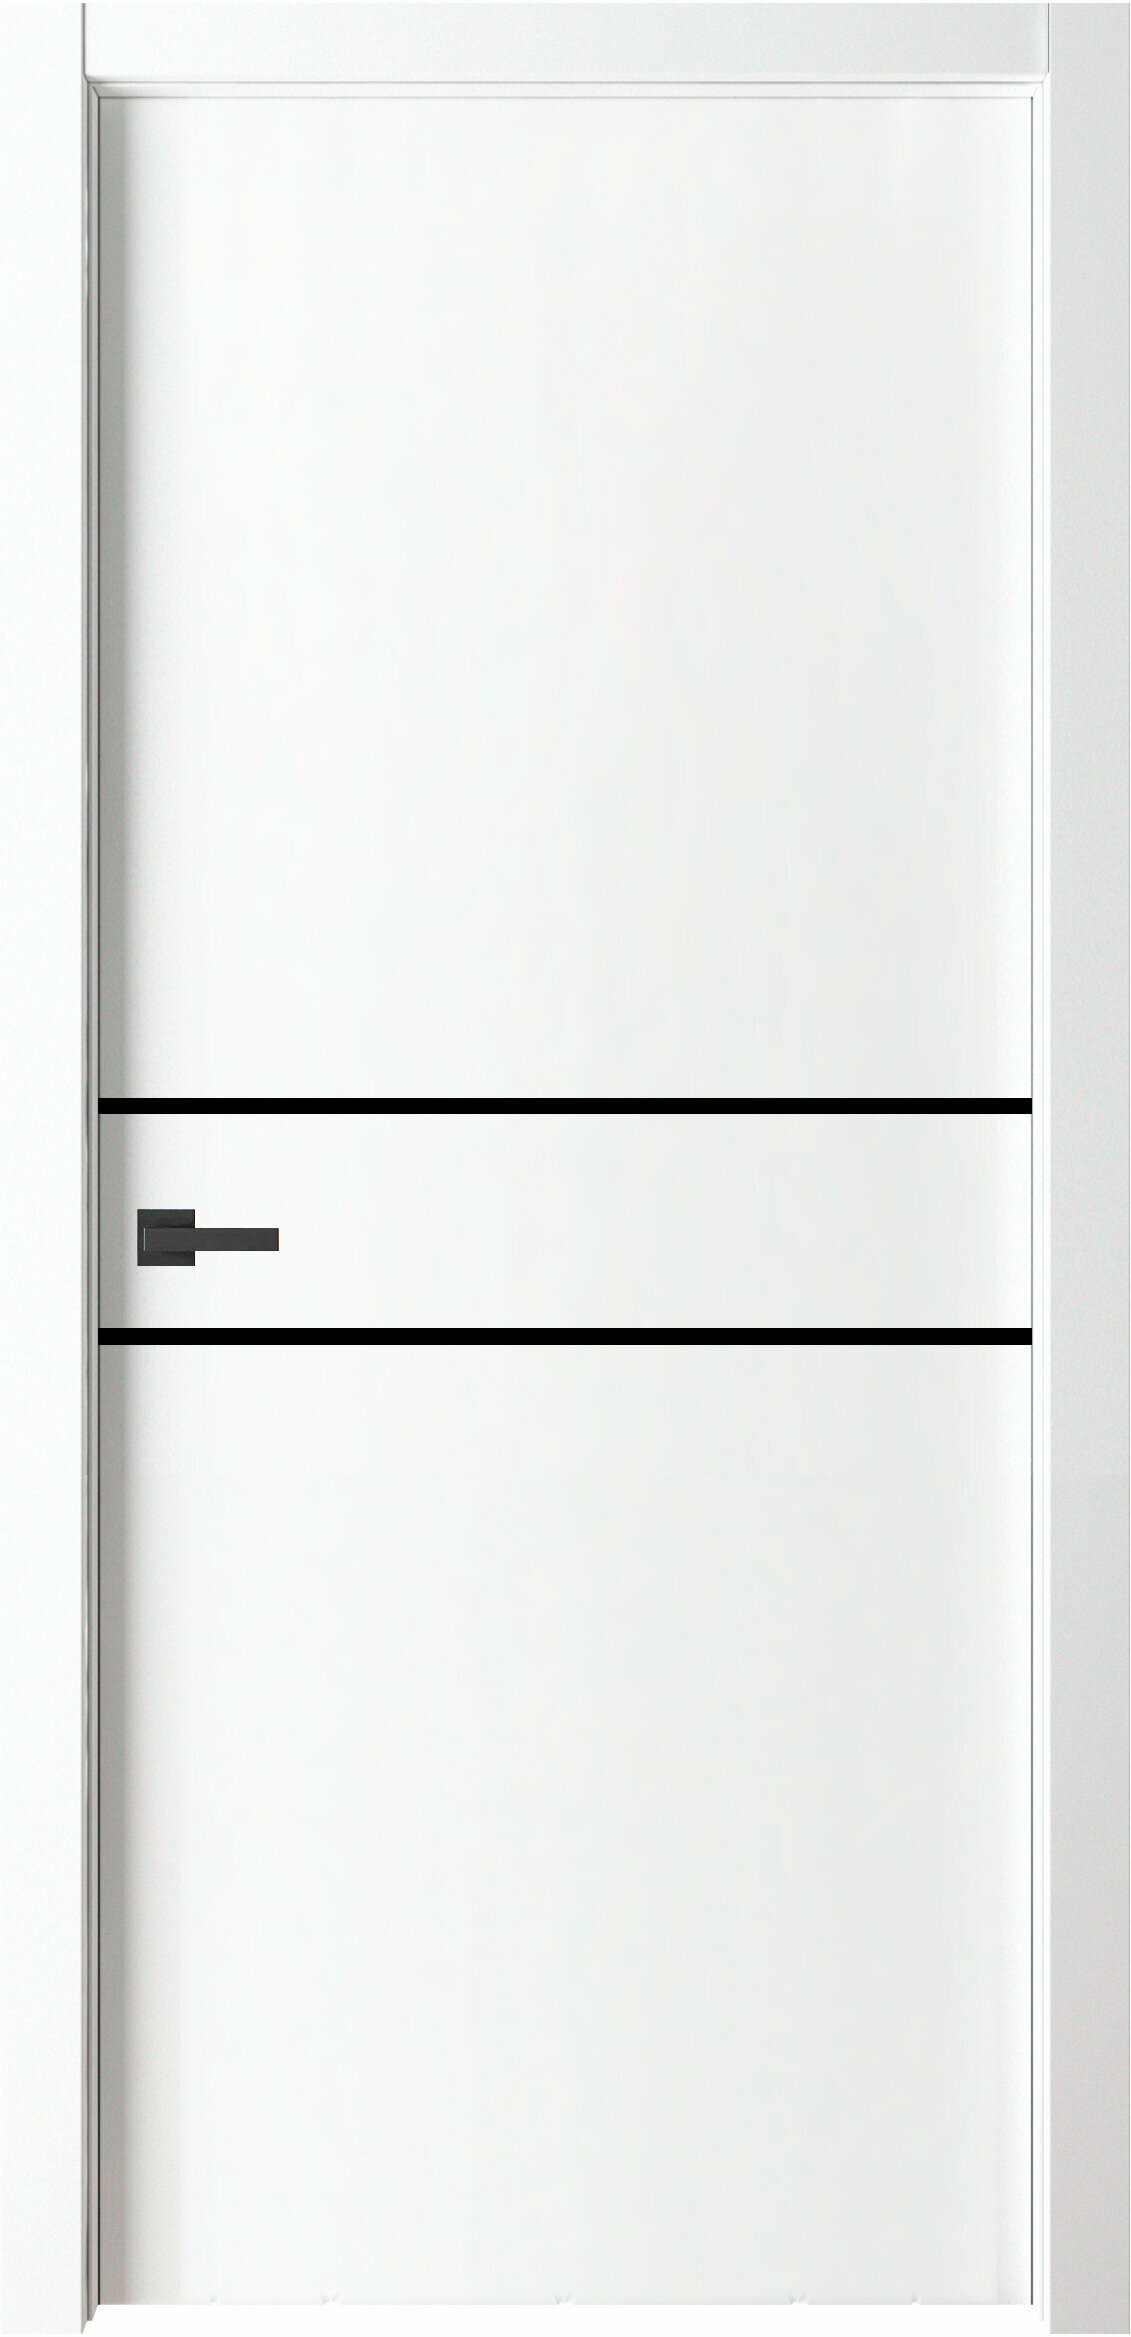 Межкомнатная дверь ВДК Line2 Цвет белый 800x2000 мм (комплект: полотно + коробочный брус + наличники)